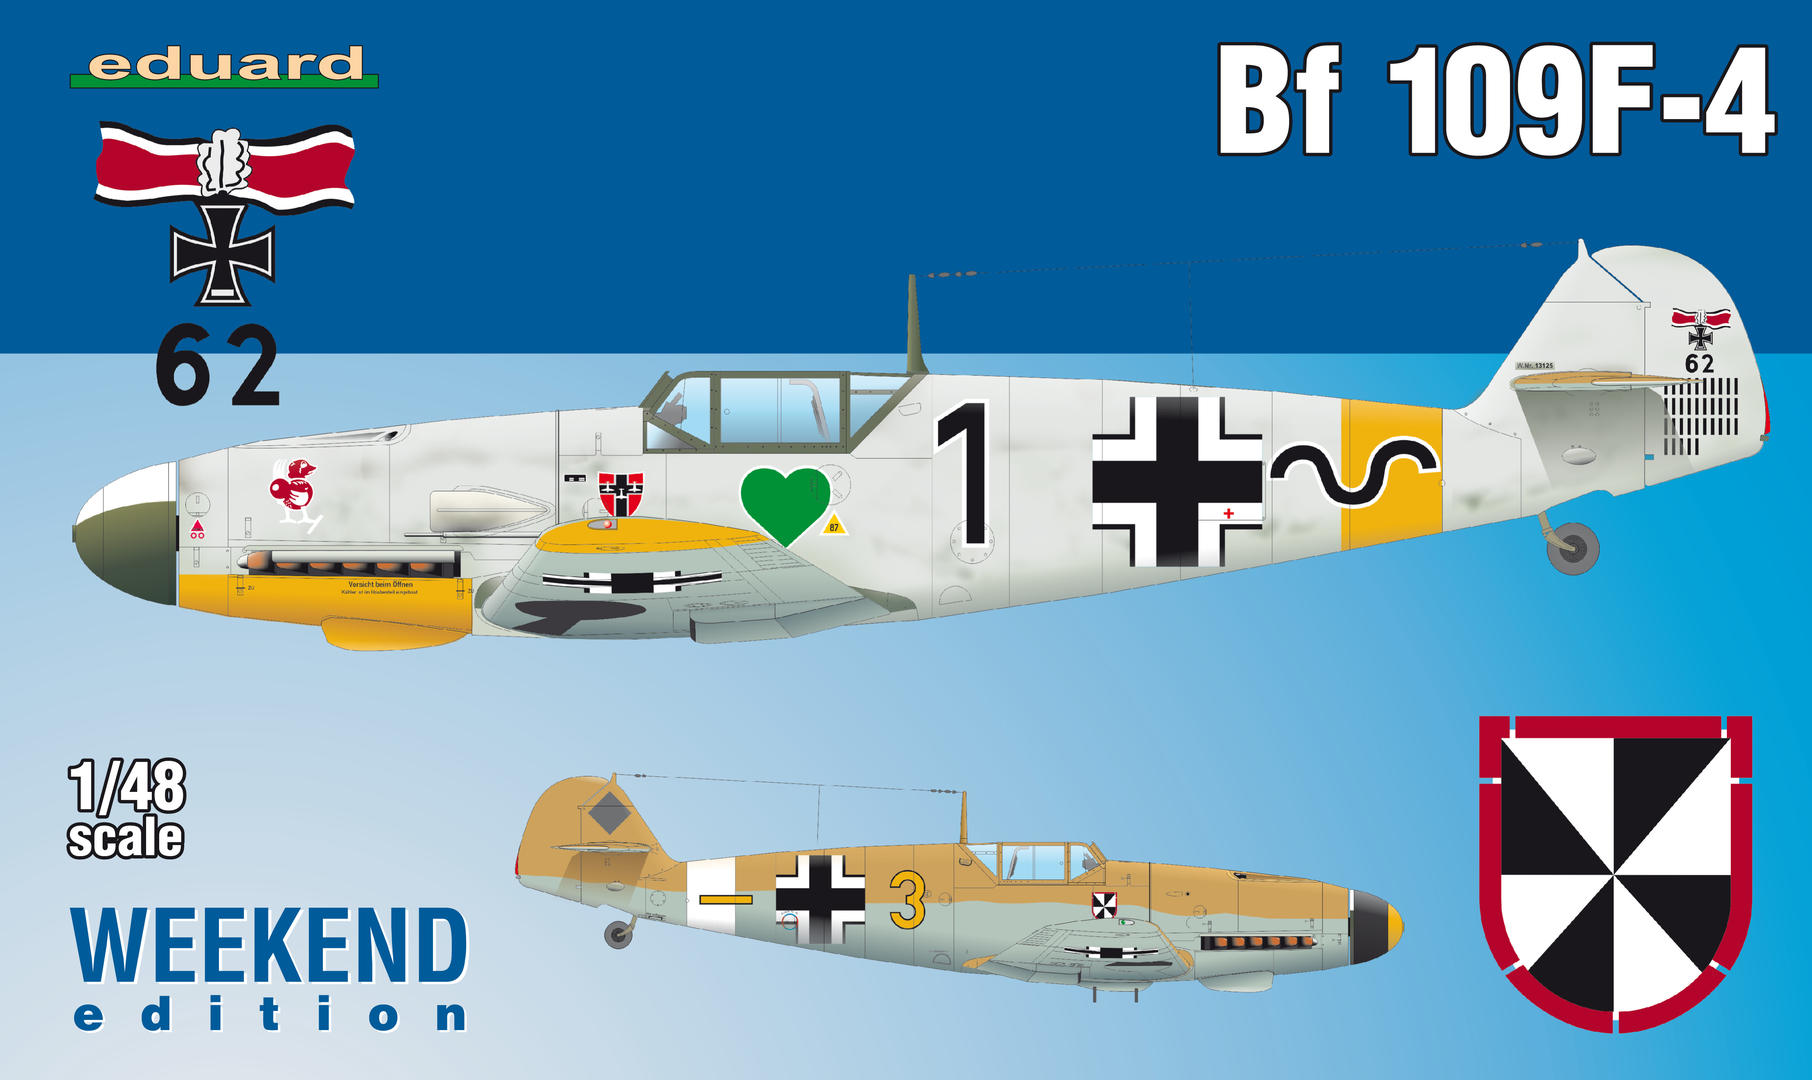 Eduard Accessories 23010 Modellbauzubeh/ör Bf 109K-4 placards f/ür Trumpeter Bausatz